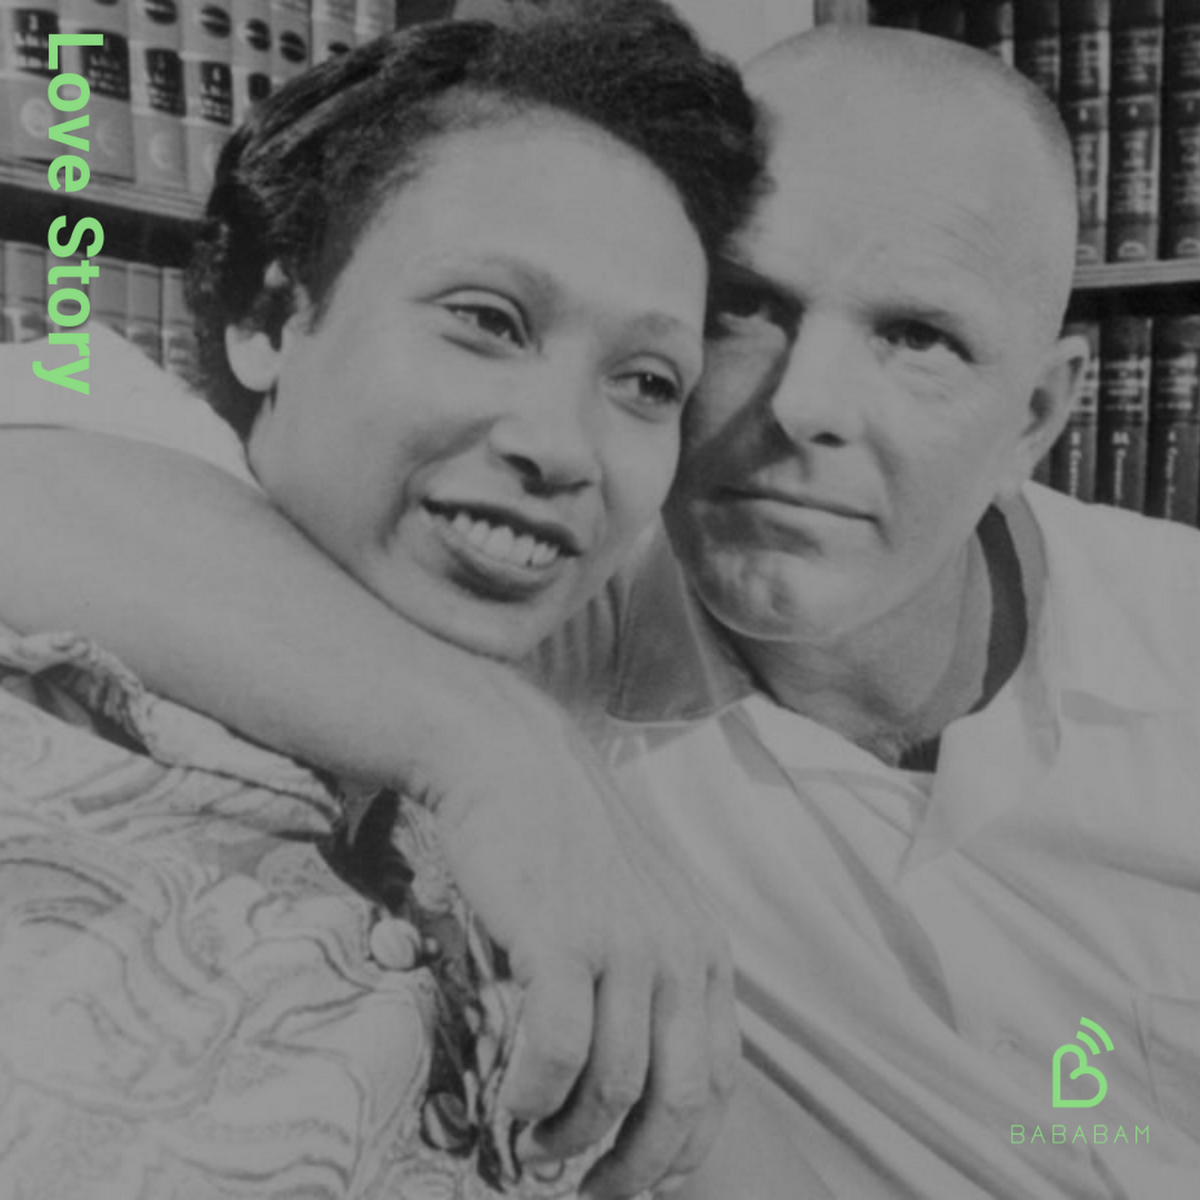 Mildred et Richard Loving, une histoire d'injustice, de lutte et de progrès - Podcast